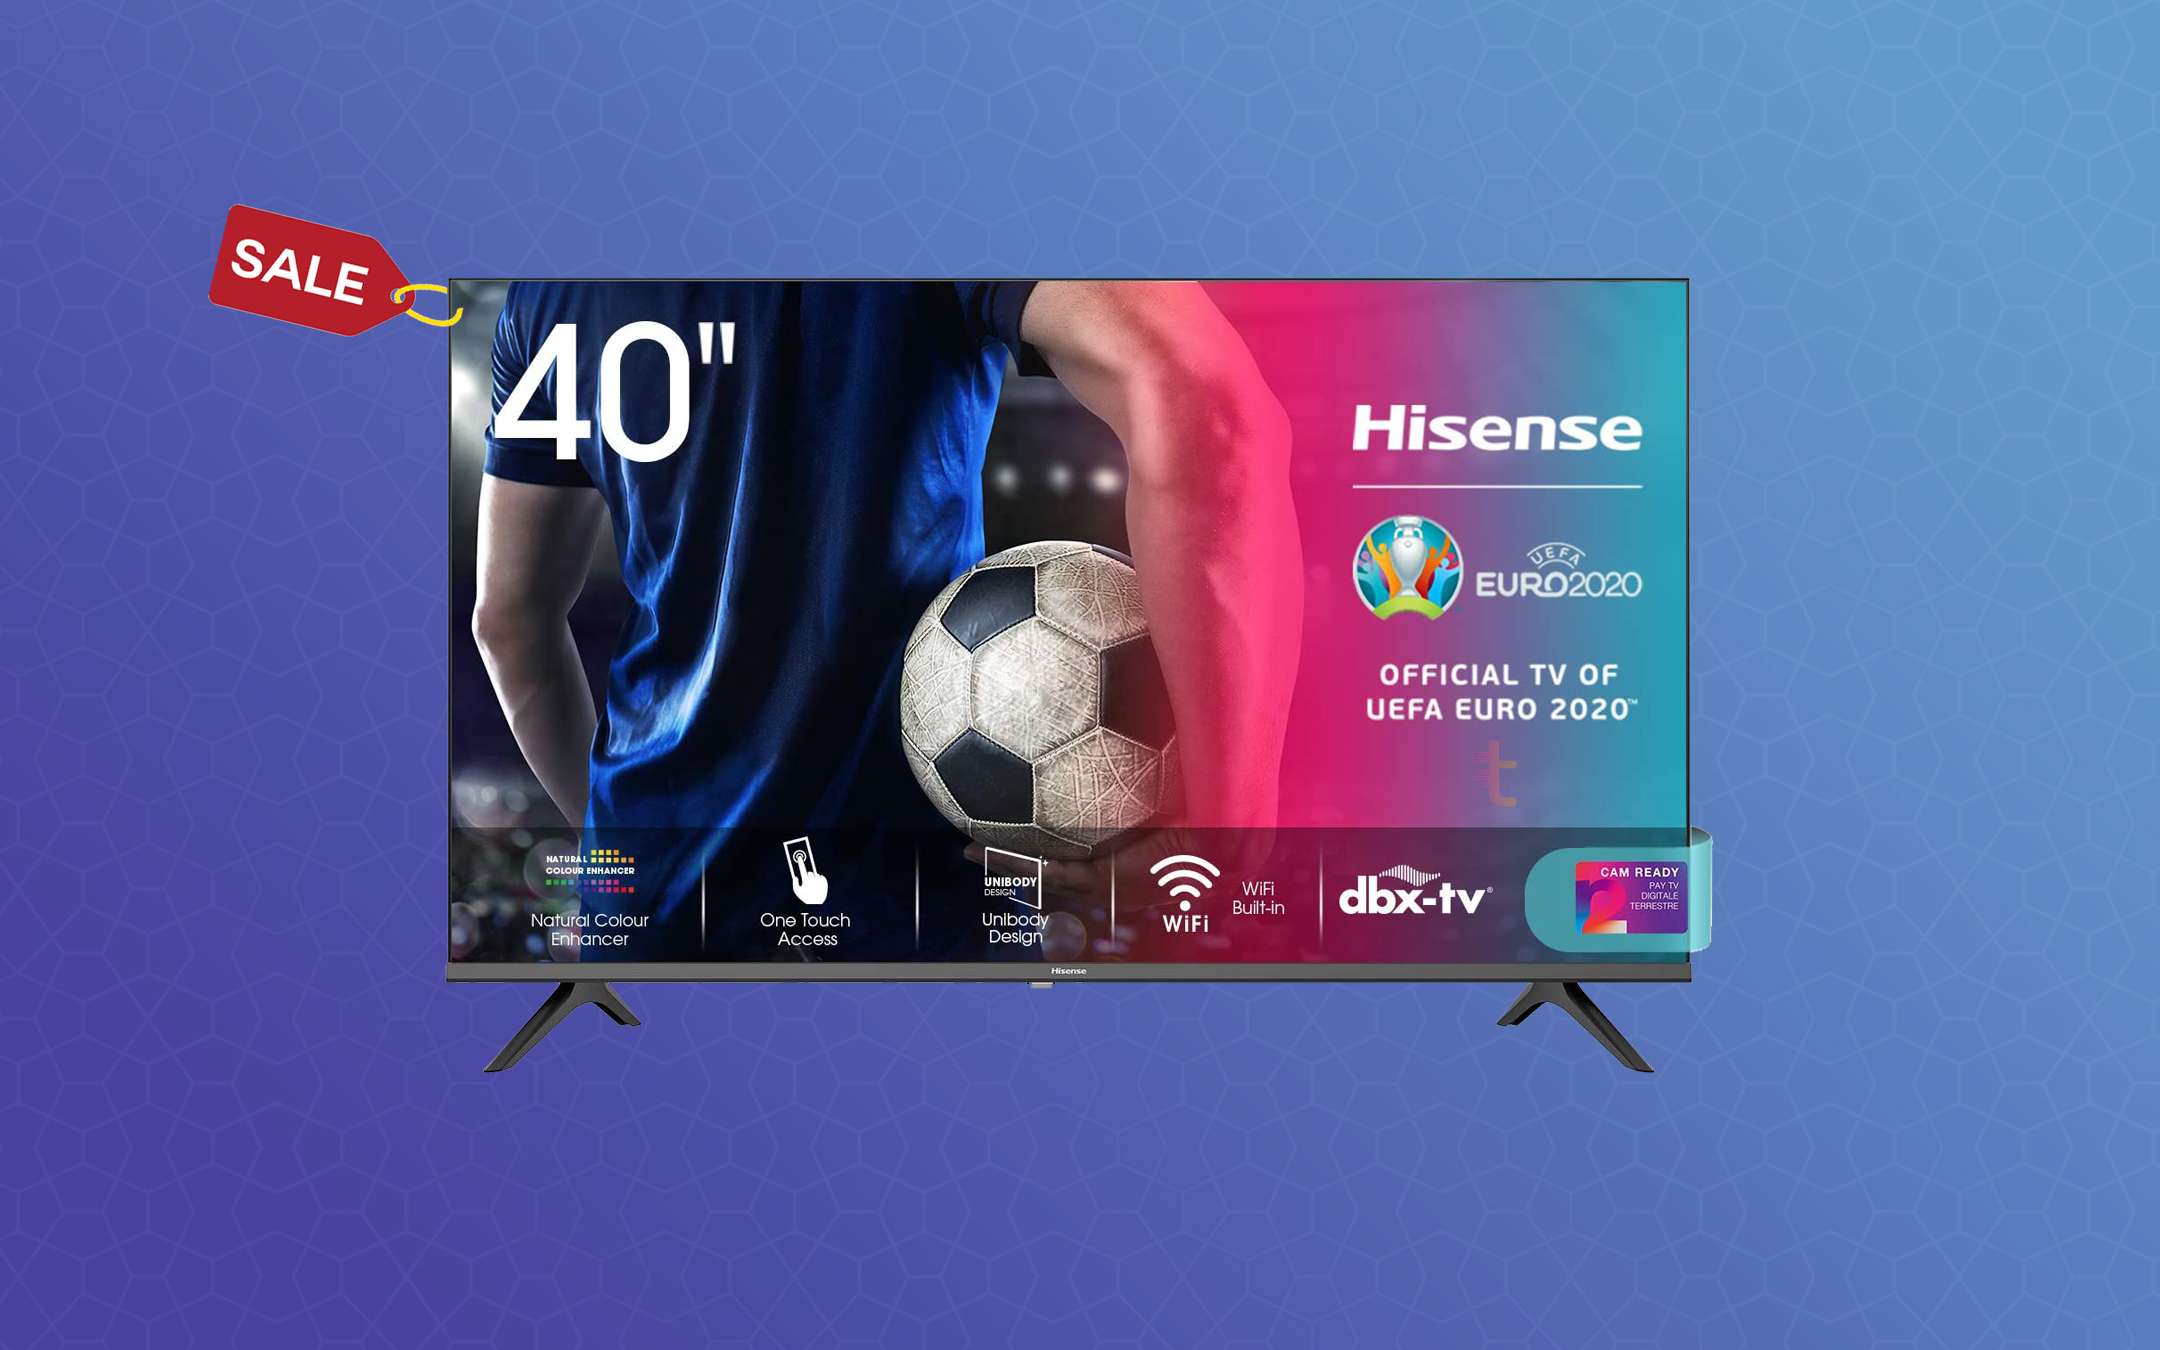 SmartTV Hisense 40 pollci con sconto di 70€ su Amazon